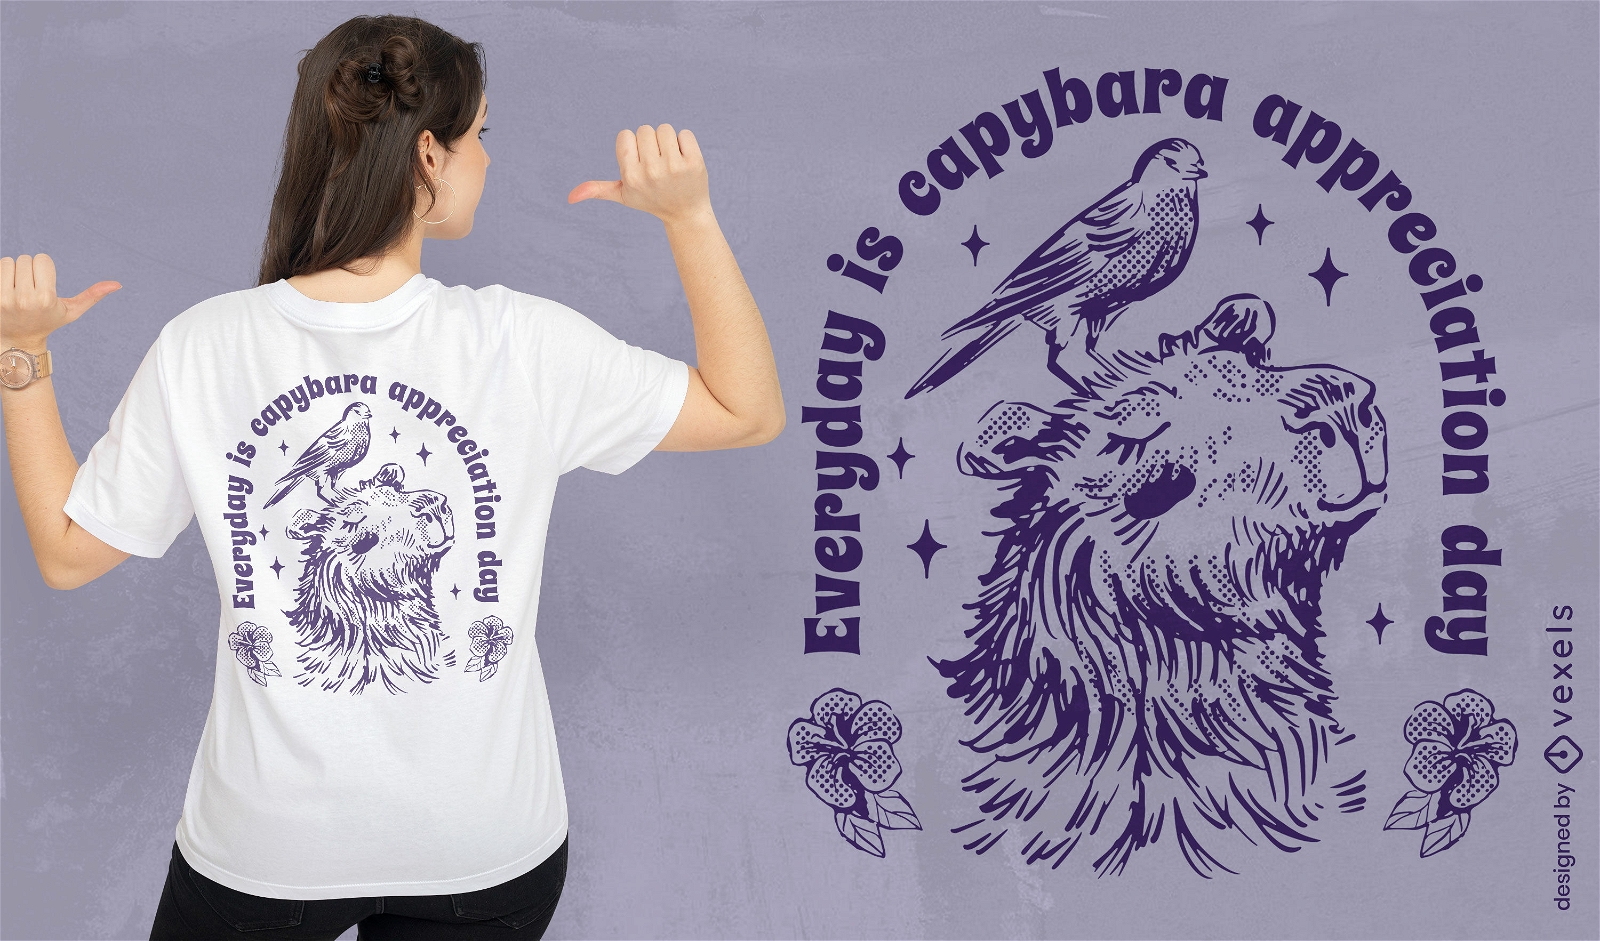 Capybara animal and bird t-shirt design